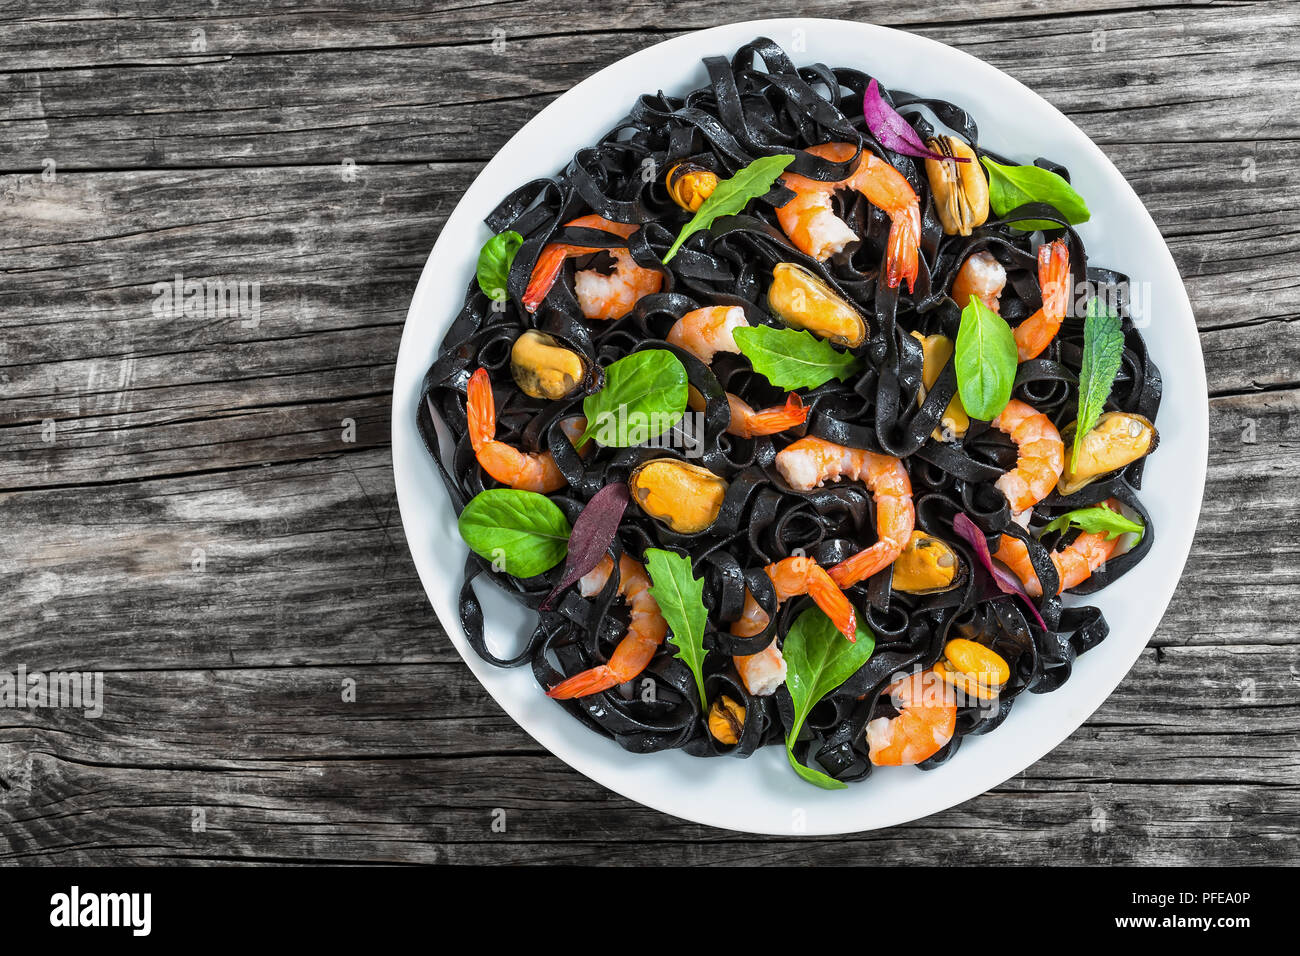 Meeresfrüchte schwarze Nudeln Salat mit Garnelen, Muscheln, frische grüne Spinat, Kopfsalat, Rucola und Minze auf weißen Teller auf dunklen Holz- Tabelle, Ansicht von oben Stockfoto